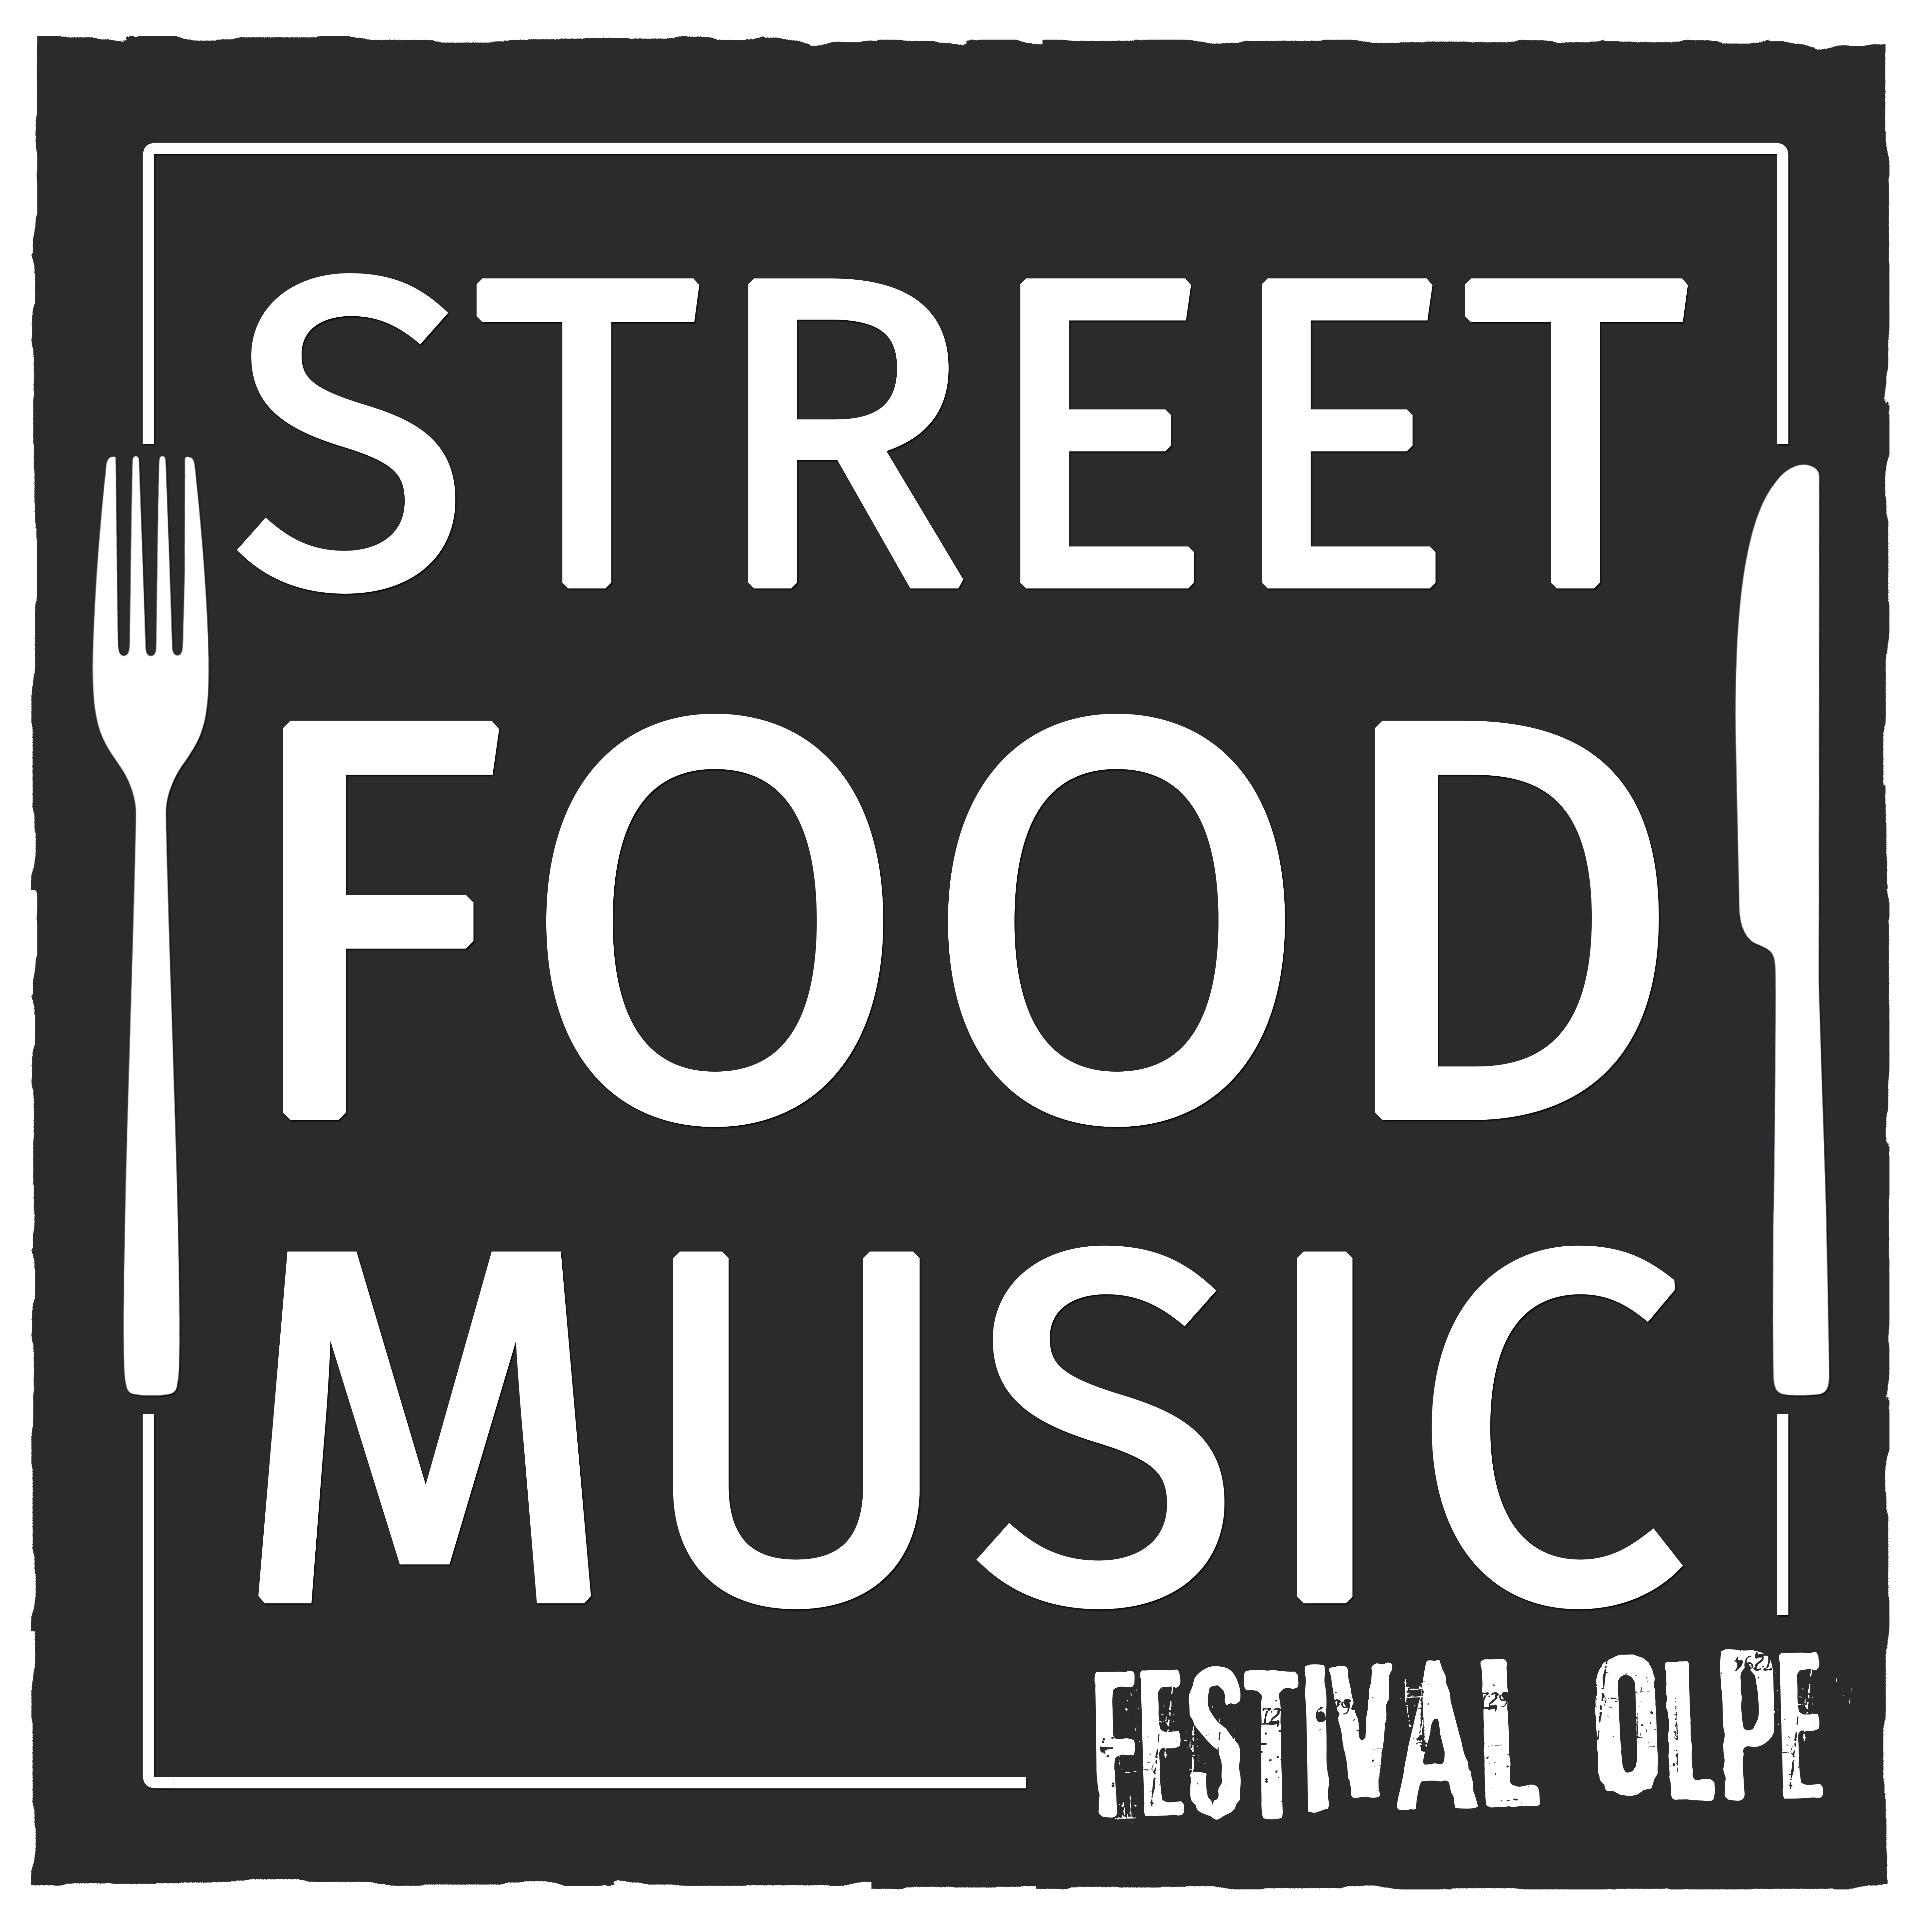 Street Food & Music Festival Olpe